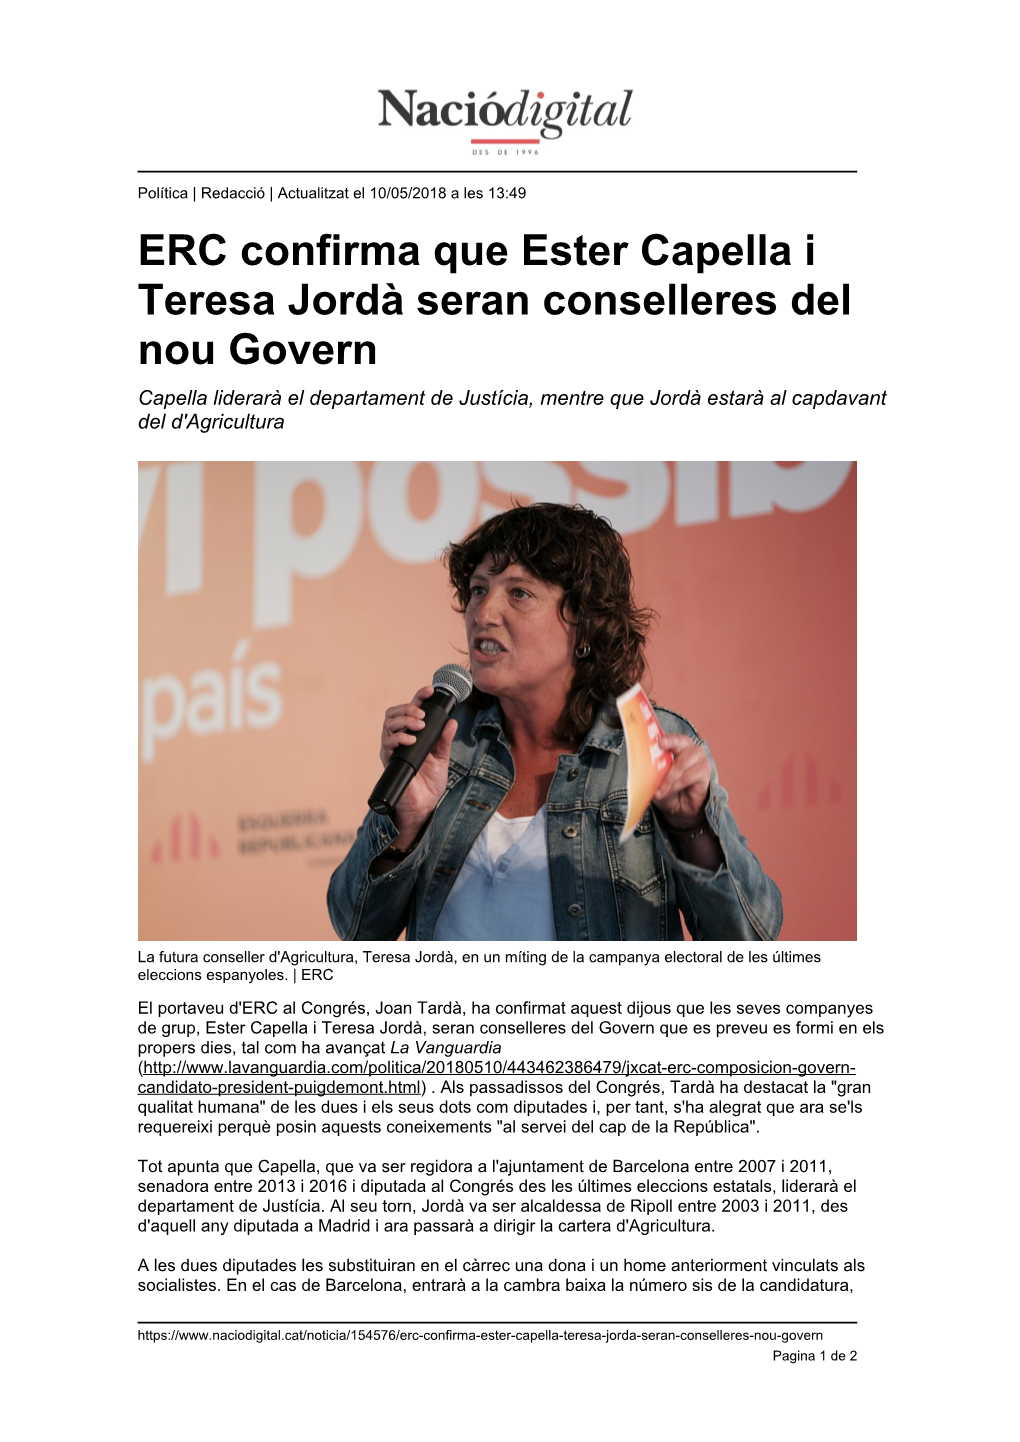 ERC Confirma Que Ester Capella I Teresa Jordà Seran Conselleres Del Nou Govern